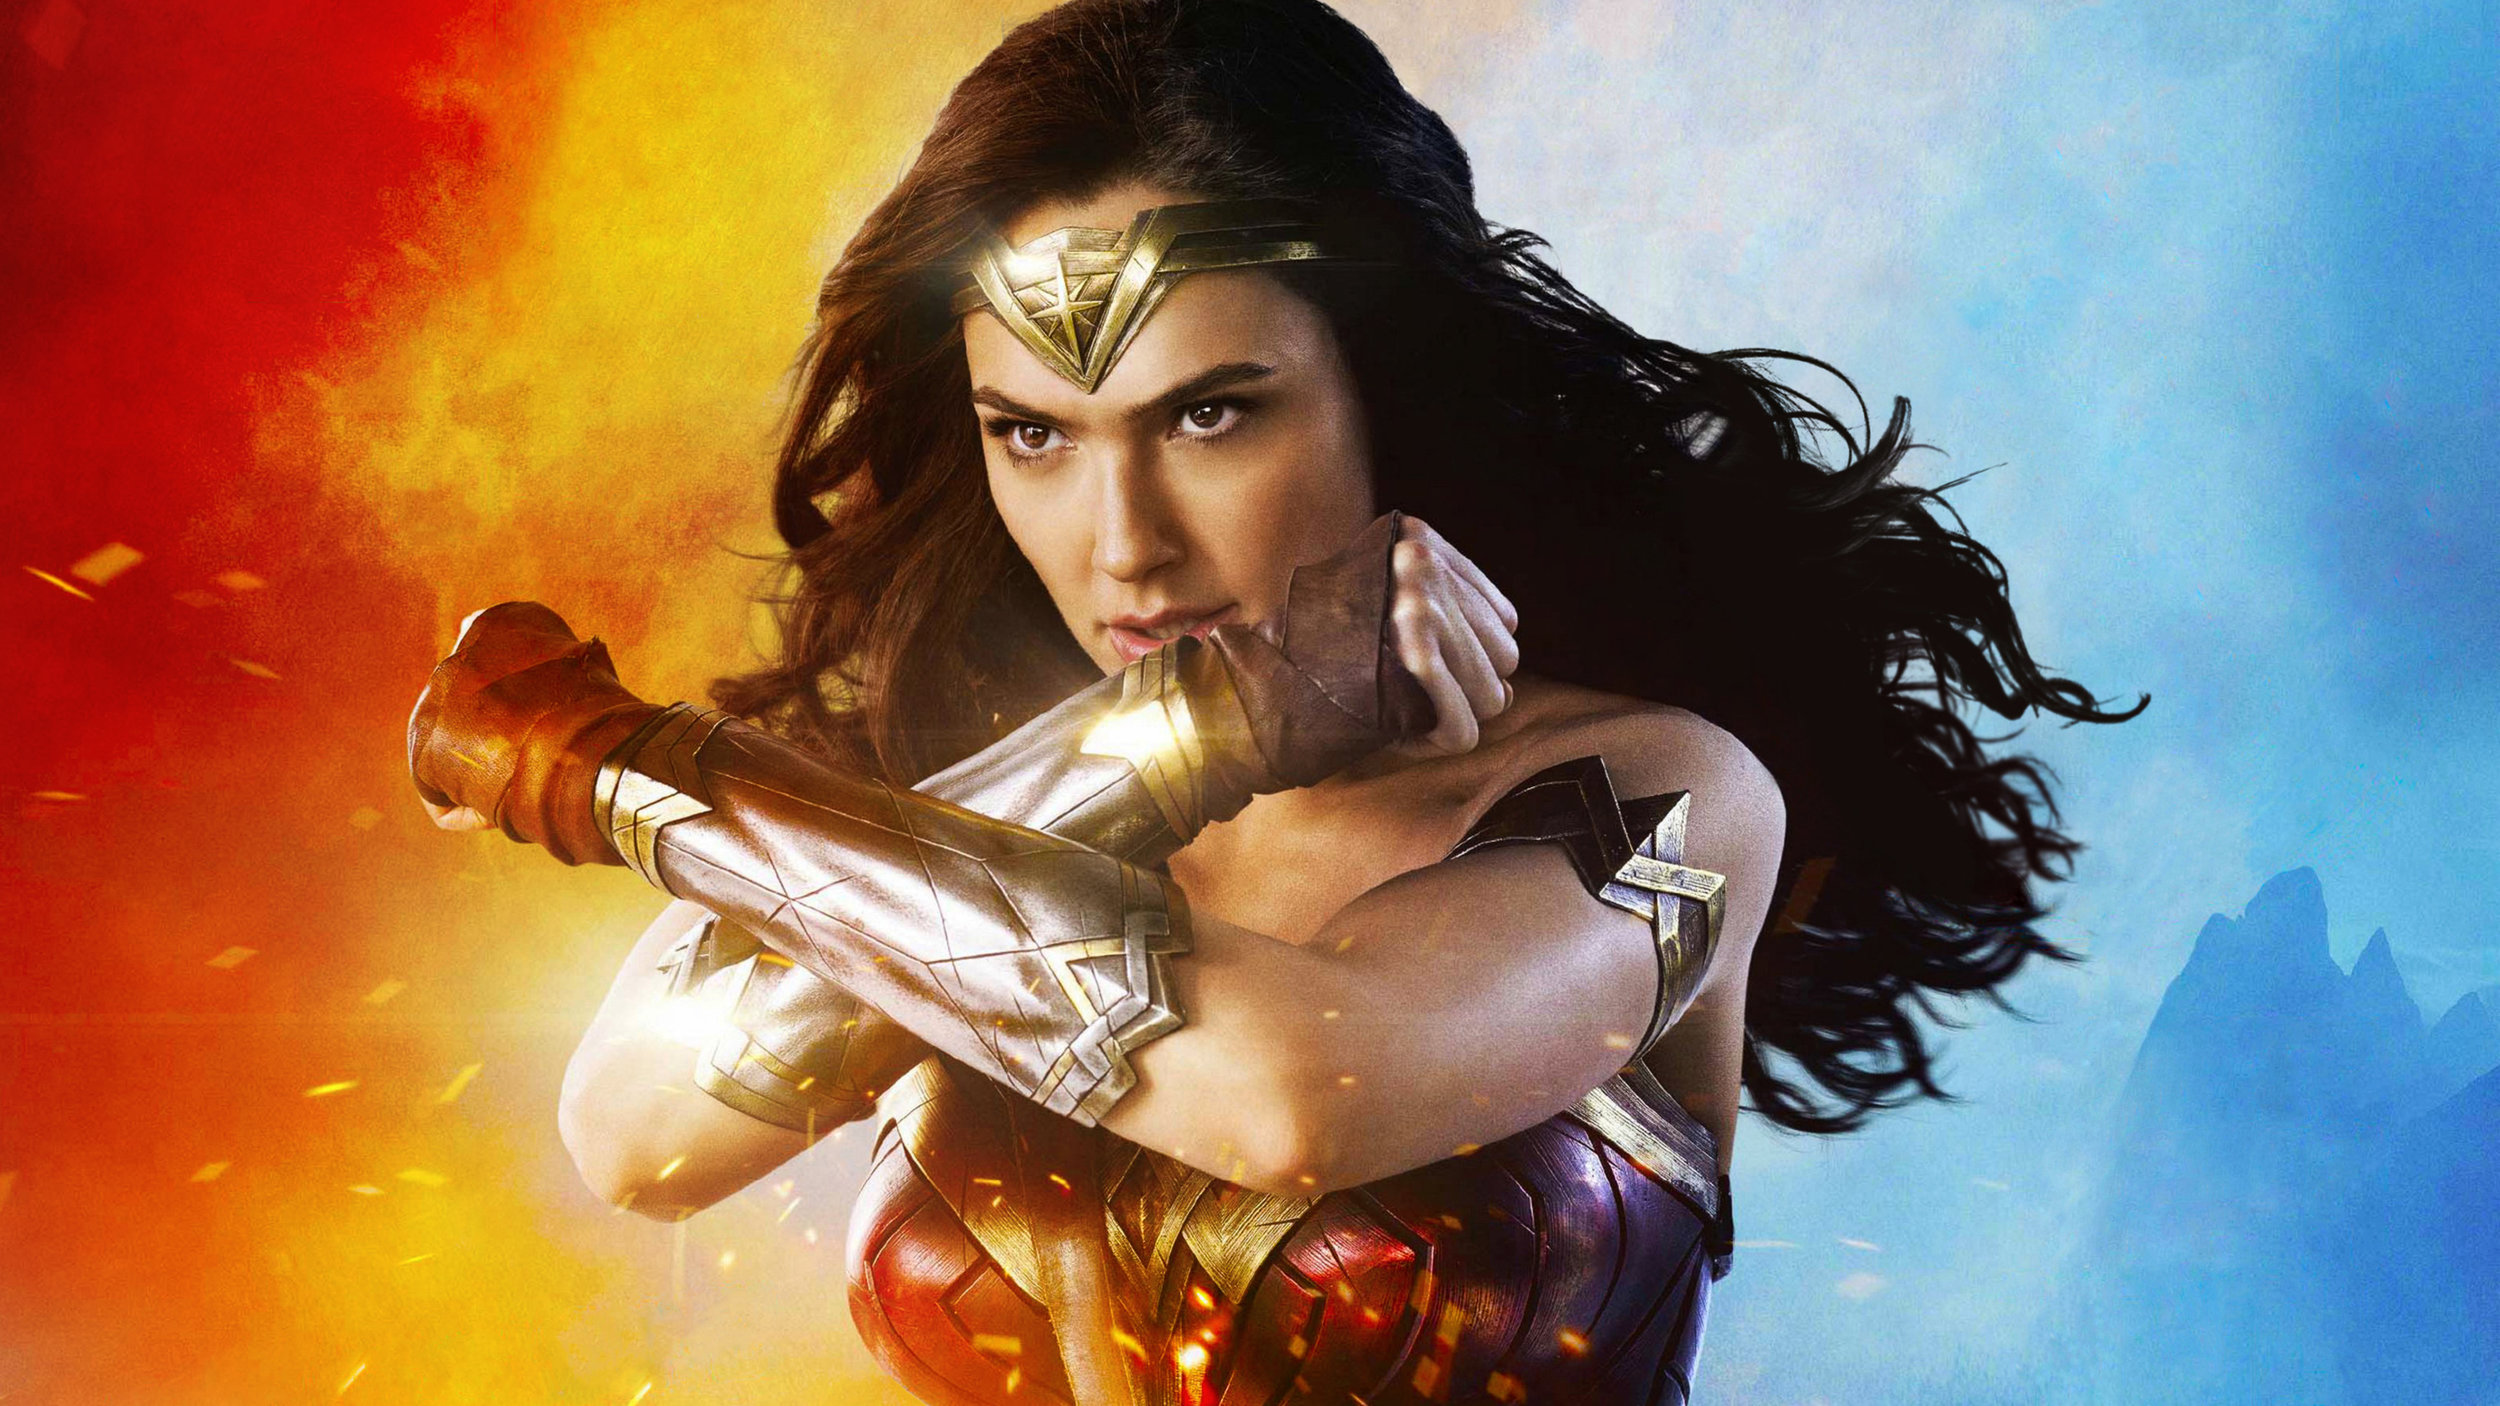 Episode 150: Wonder Woman&lt;a href="http://www.strideandsaunter.com/new-blog/2017/6/11/episode-150-wonder-woman"&gt;Listen →&lt;/a&gt;&lt;/p&gt;